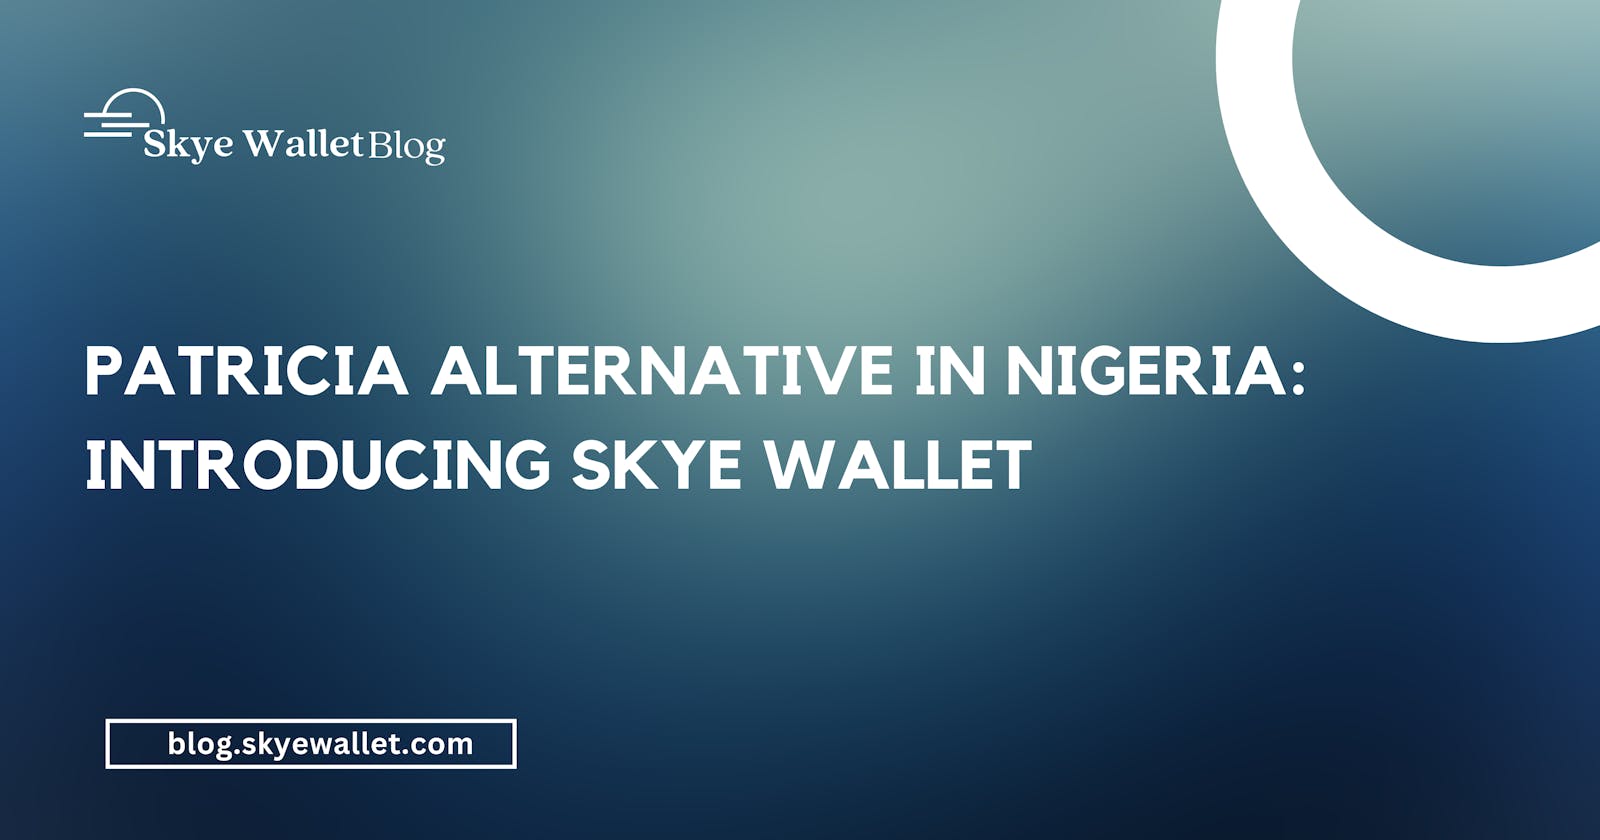 Patricia Alternative in Nigeria: Introducing Skye Wallet